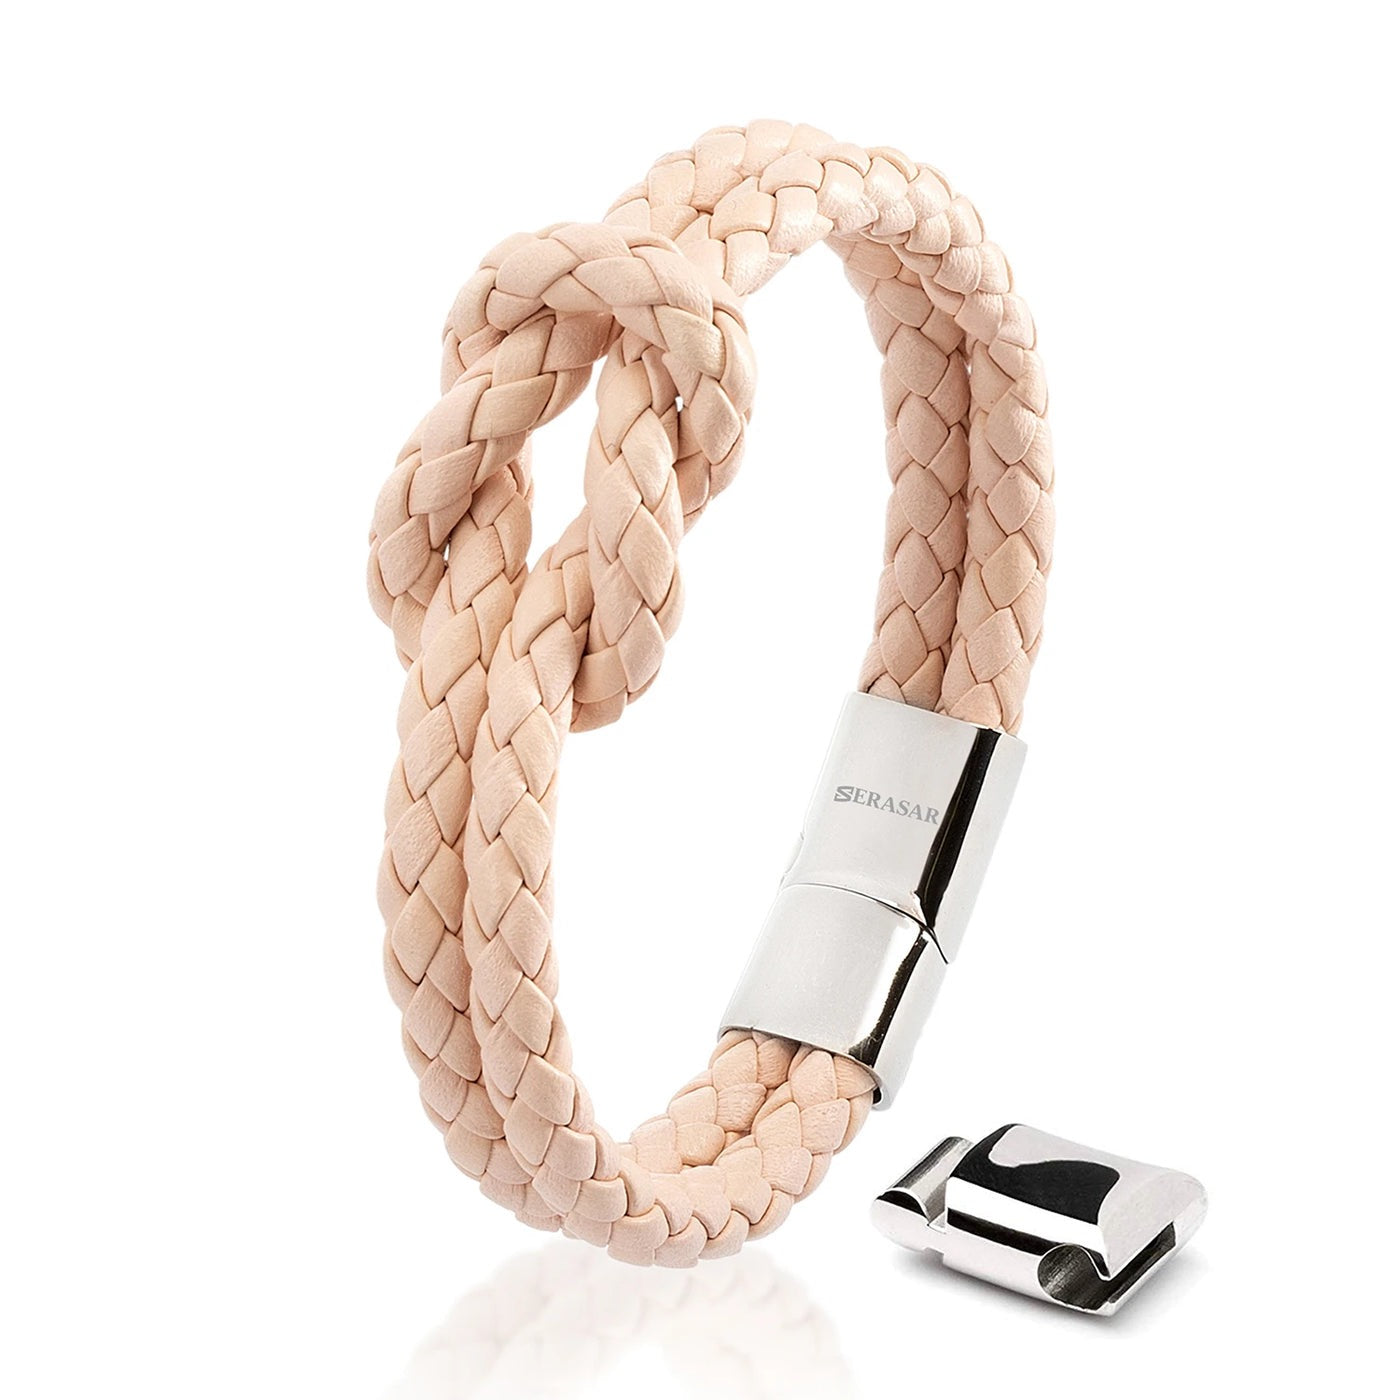 Armband "Knot" - Echtes Rindsleder, polierter Edelstahl (rostfrei) und ein starker Magnet-Verschluss - WEISS